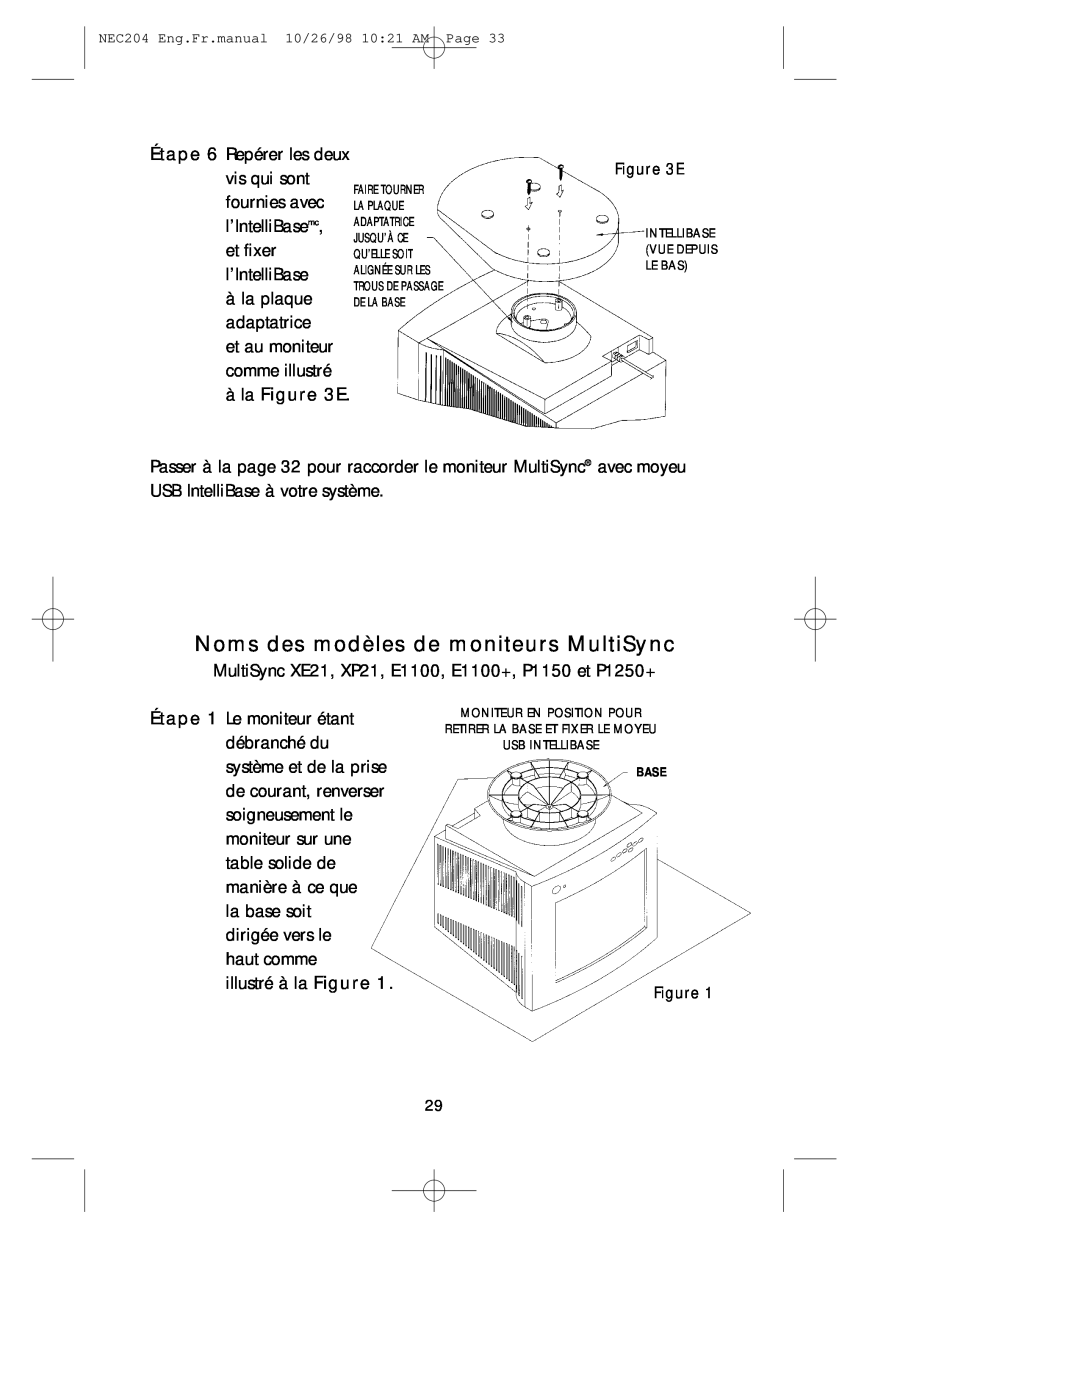 NEC A3844, IB-USB user manual Noms des modèles de moniteurs MultiSync, àla E 